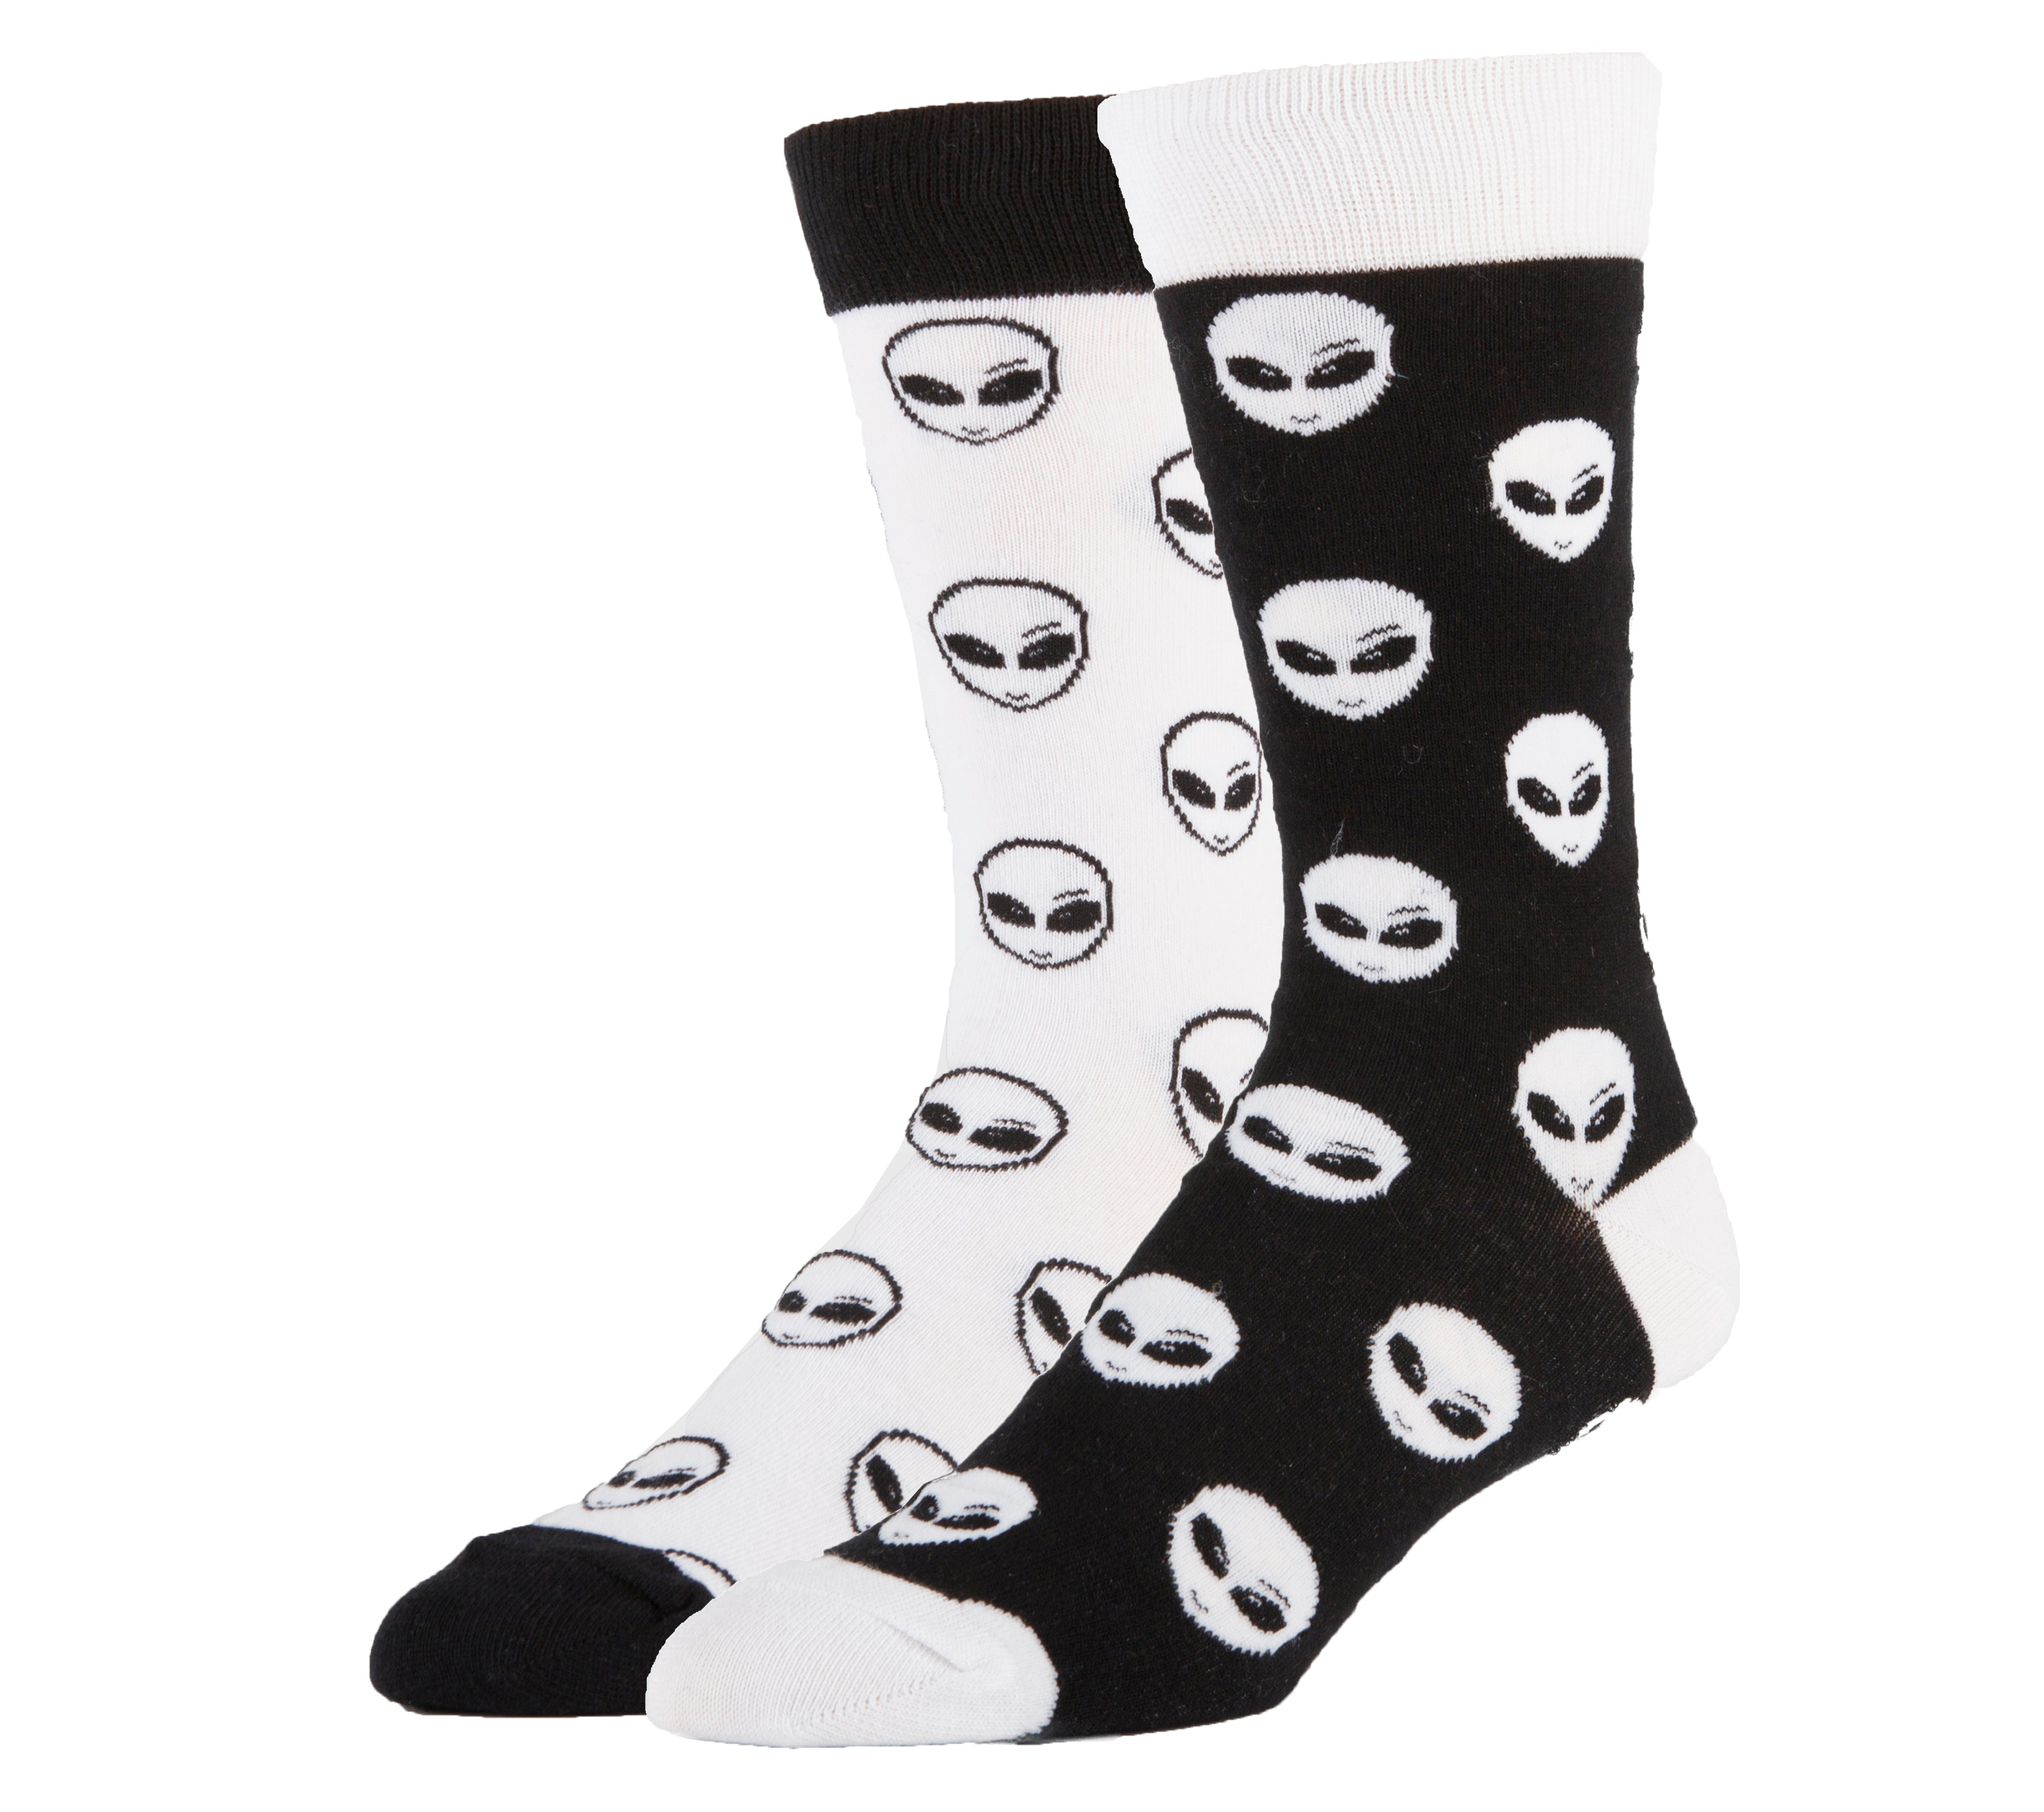 Dark Side Socks | Novelty Crew Socks For Men